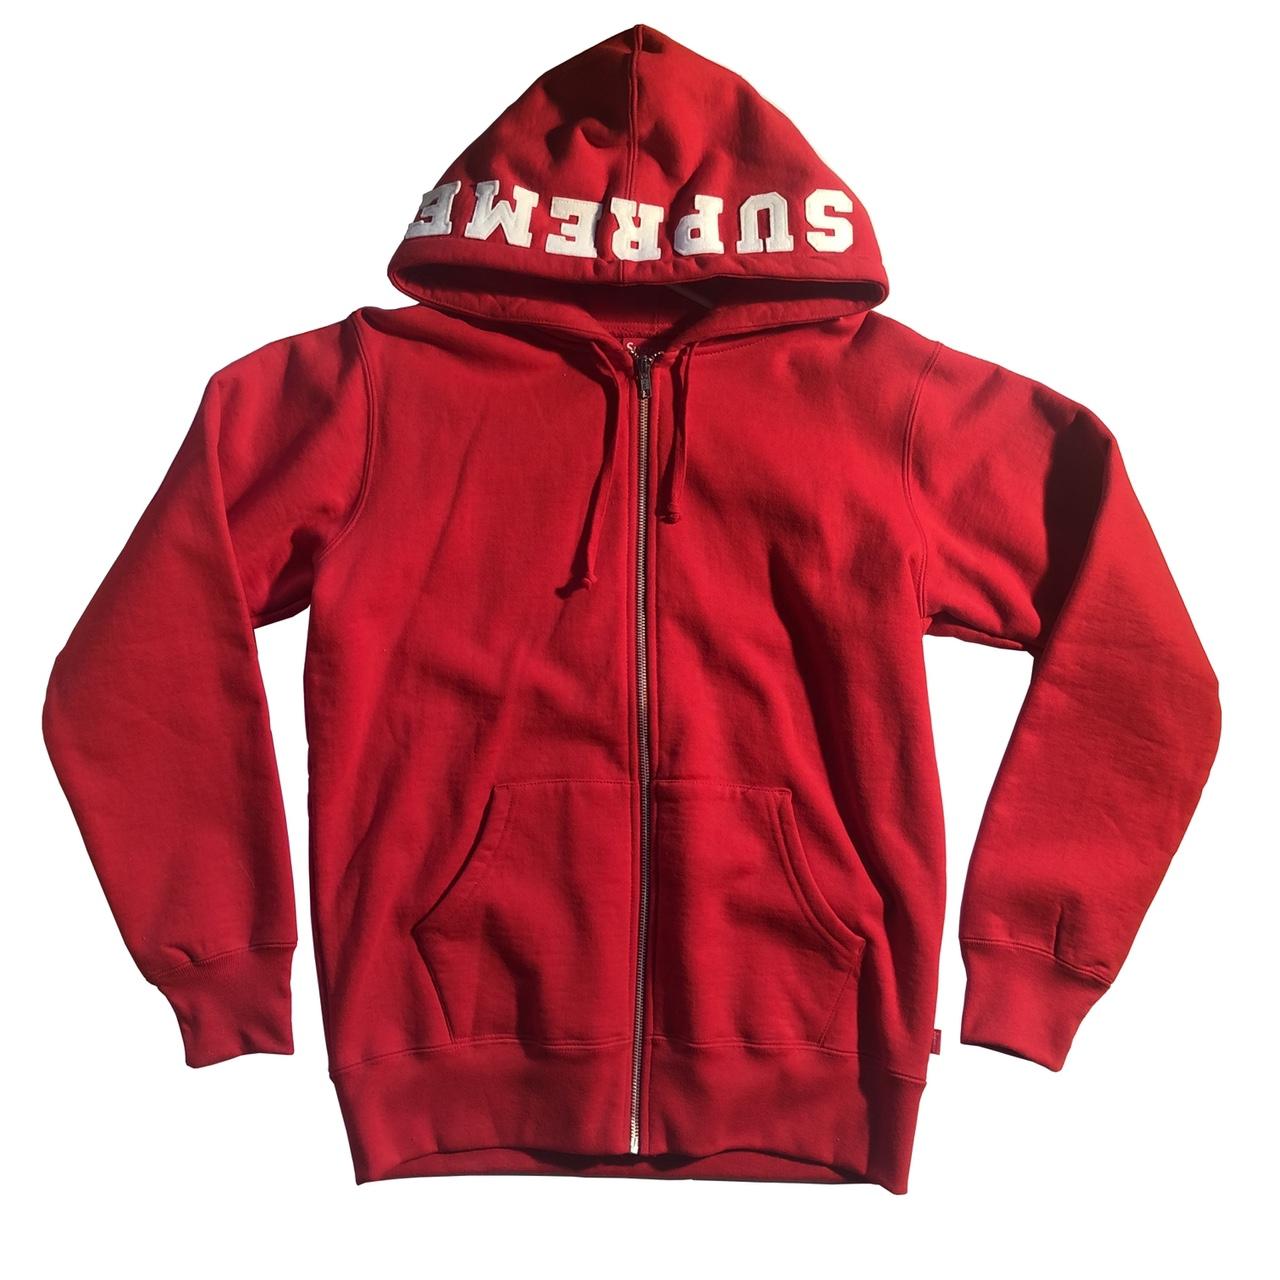 Red supreme-hoodie - Depop